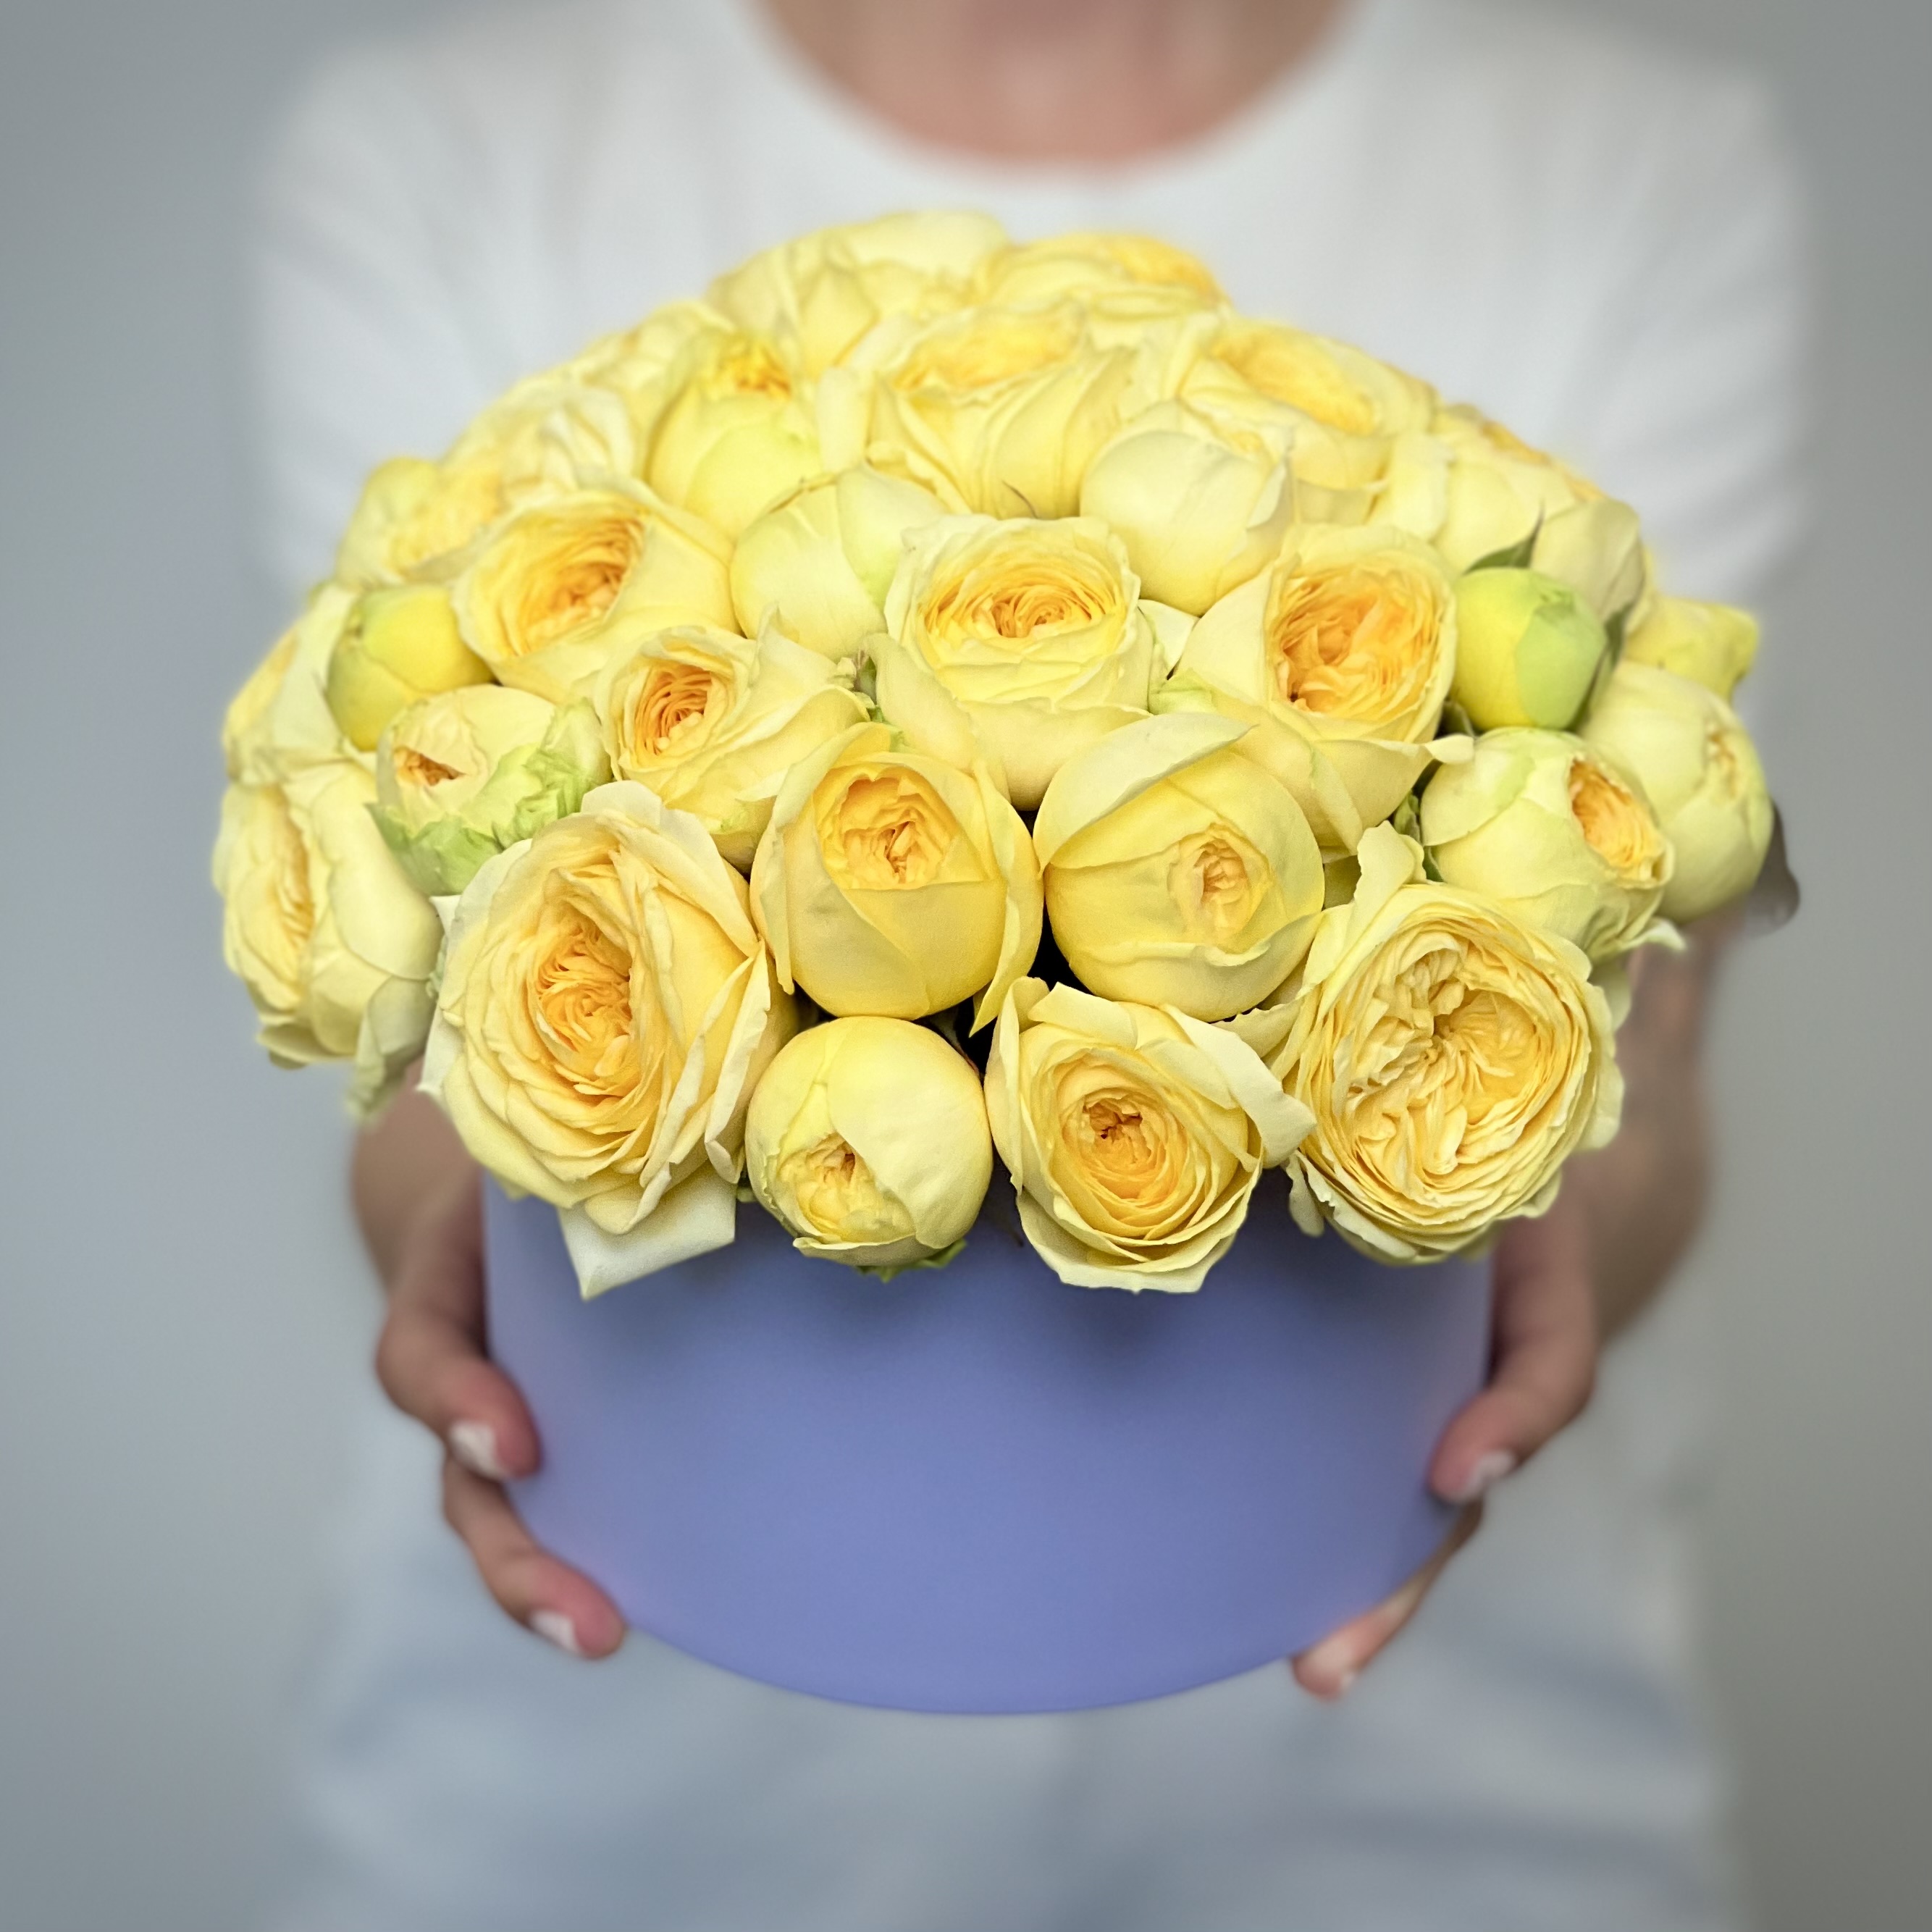 Желтые кустовые пионовидные розы в коробке S 2 20 желтые розы